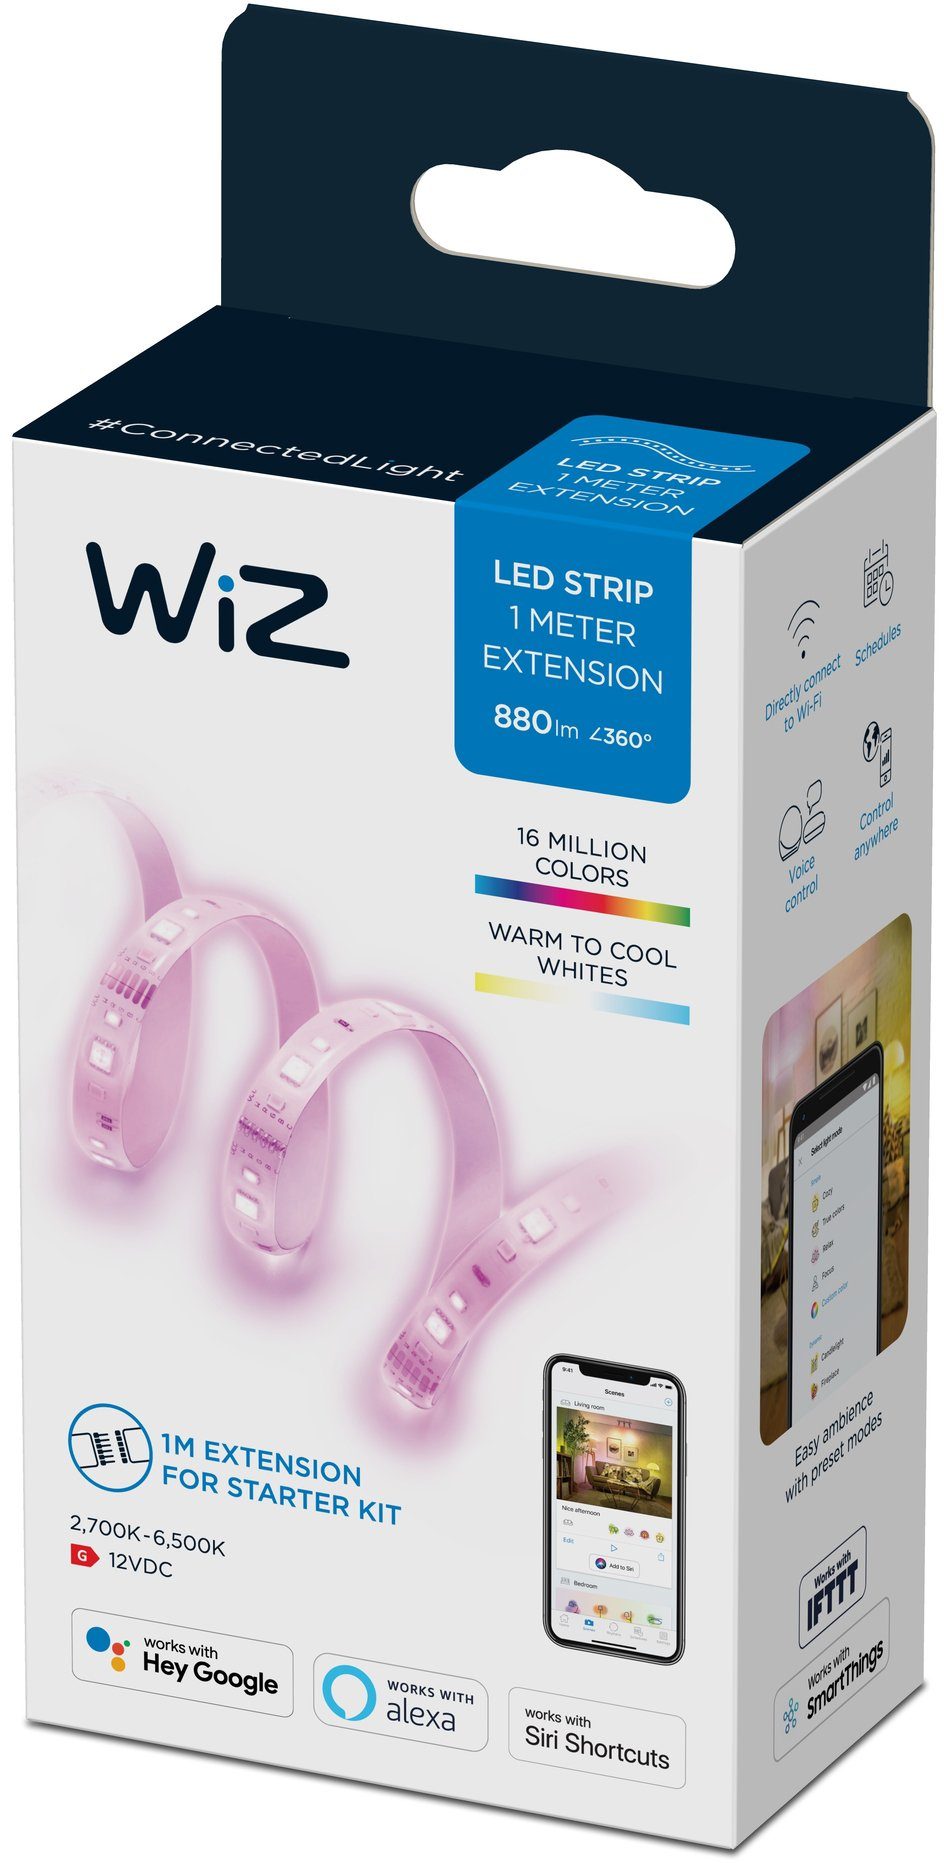 WiZ LED Stripe White&Color Lightstrip für Einzelpack, 880lm Lichterlebnis flexibles Ihr Zuhause Extension 1m vielfältiges und